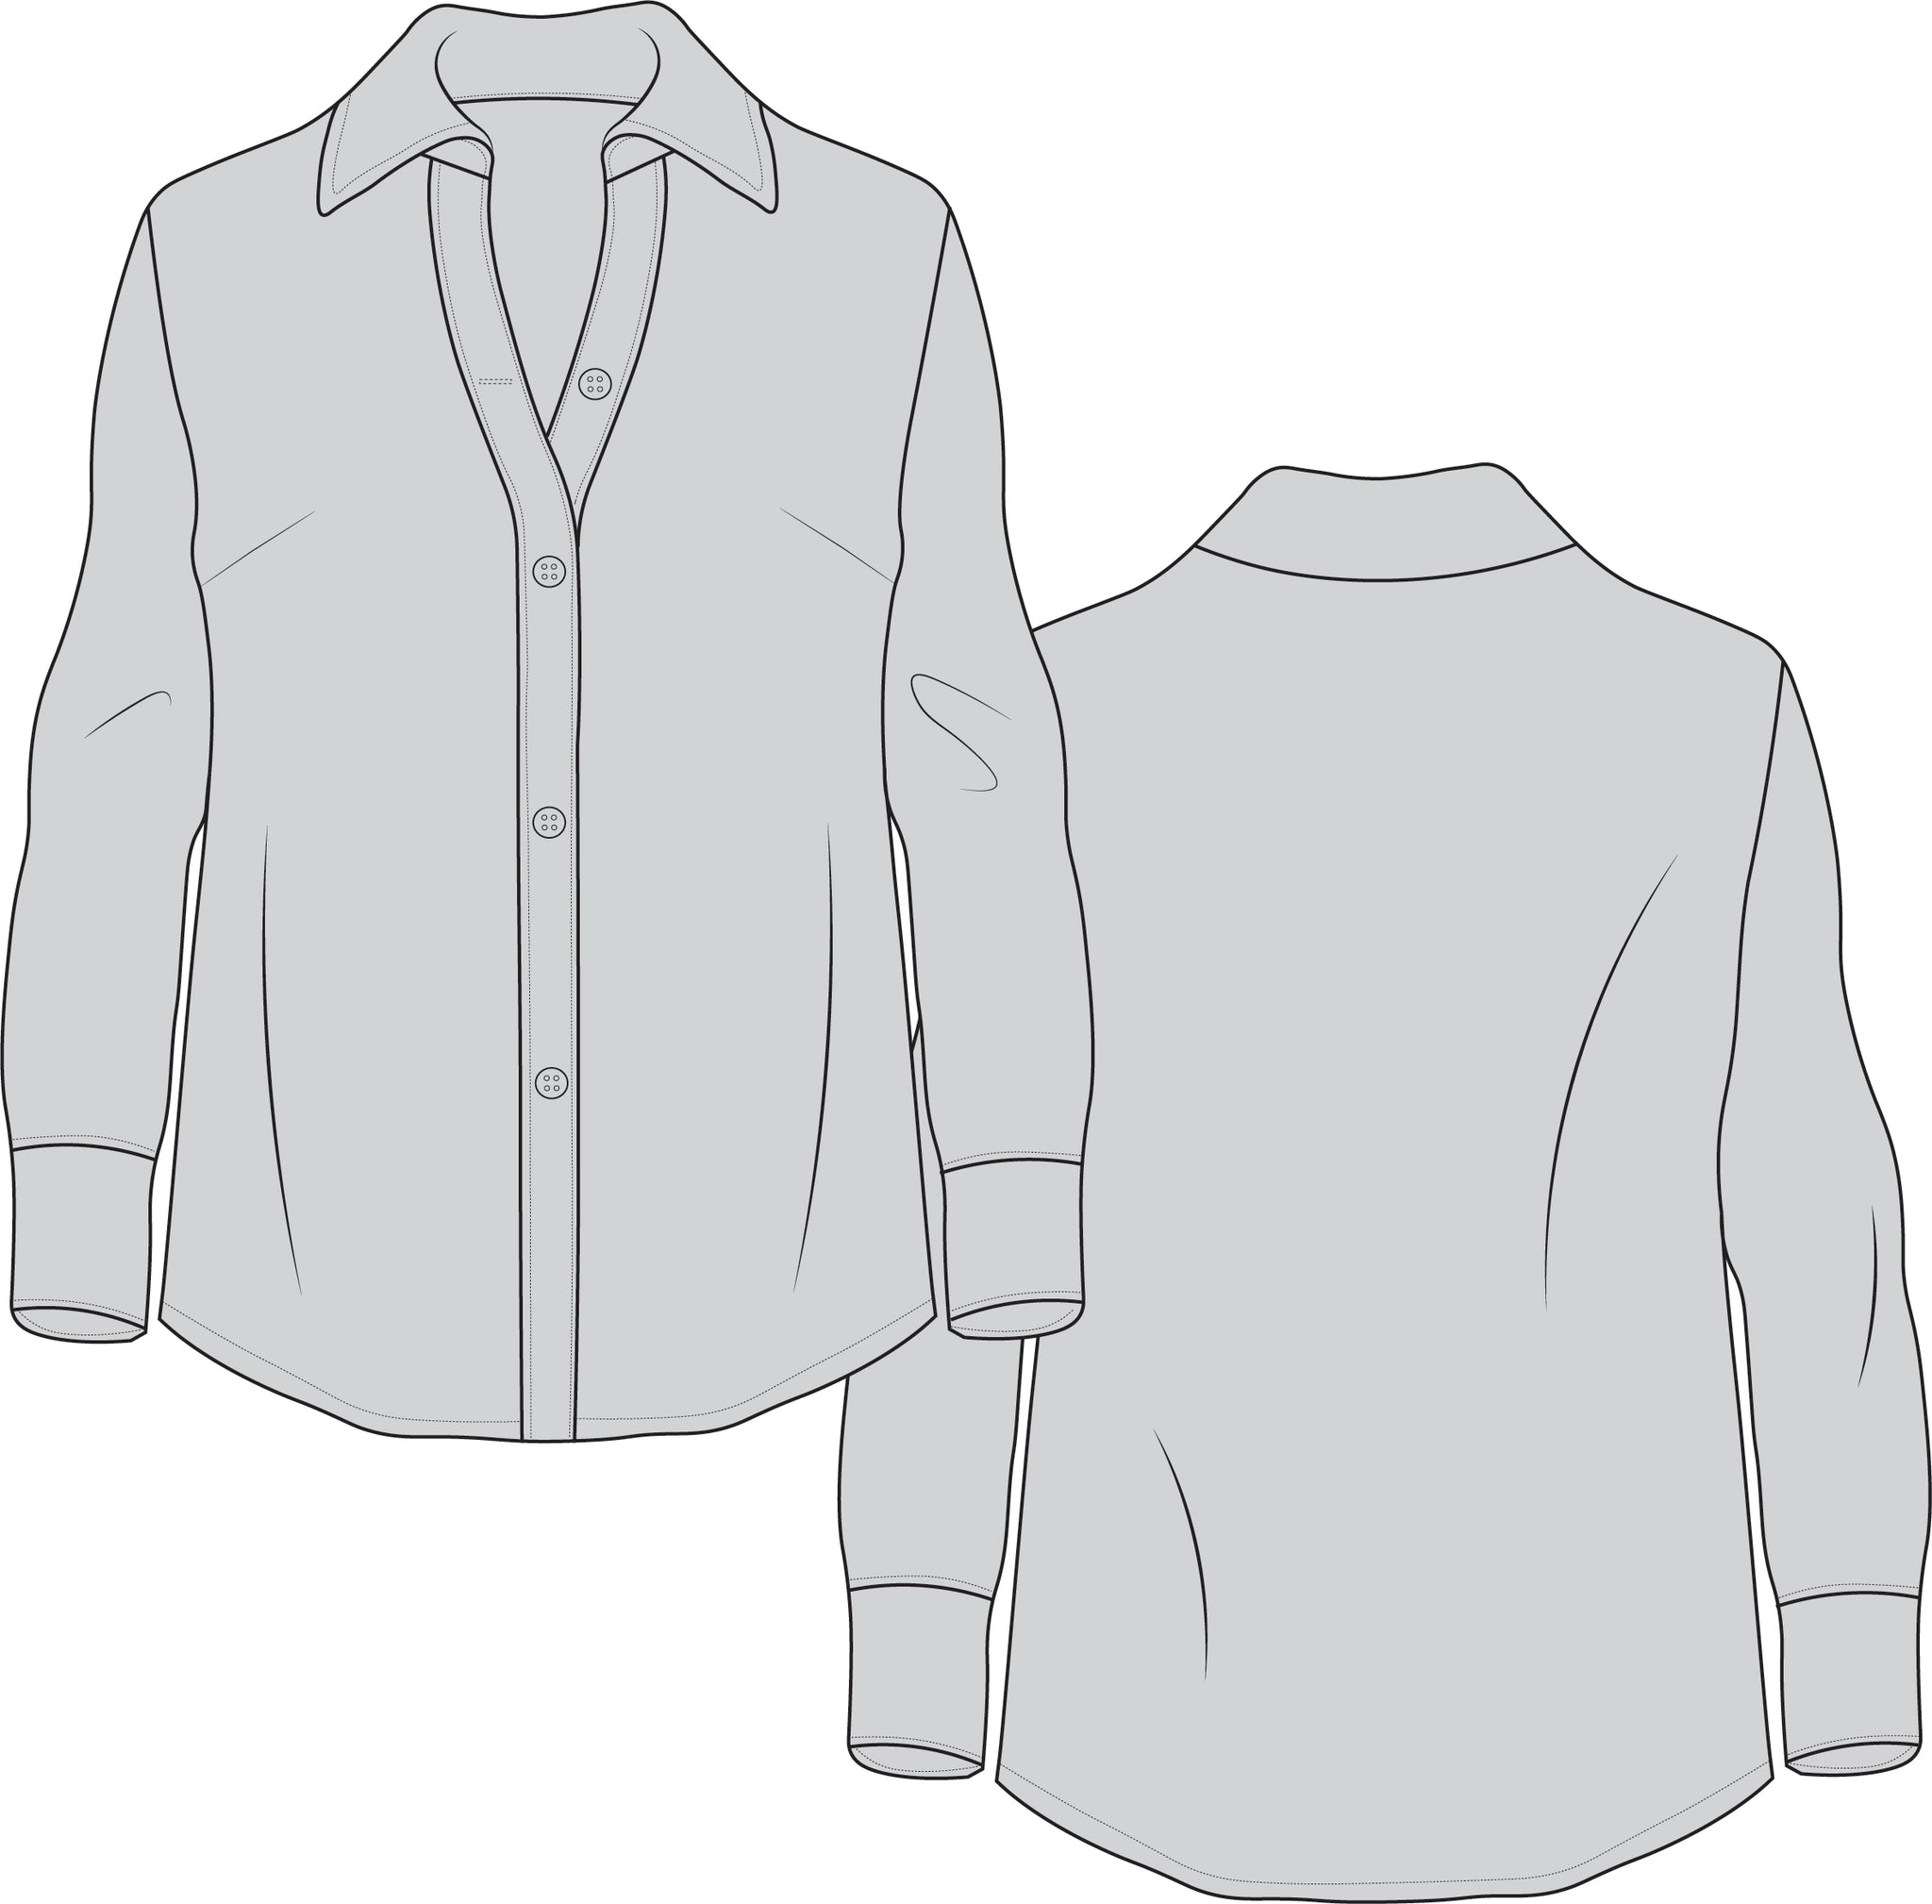 Ứng dụng Fashion Design Flat Sketch: Tự tay thiết kế quần áo, trang phục |  Link tải free, cách sử dụng